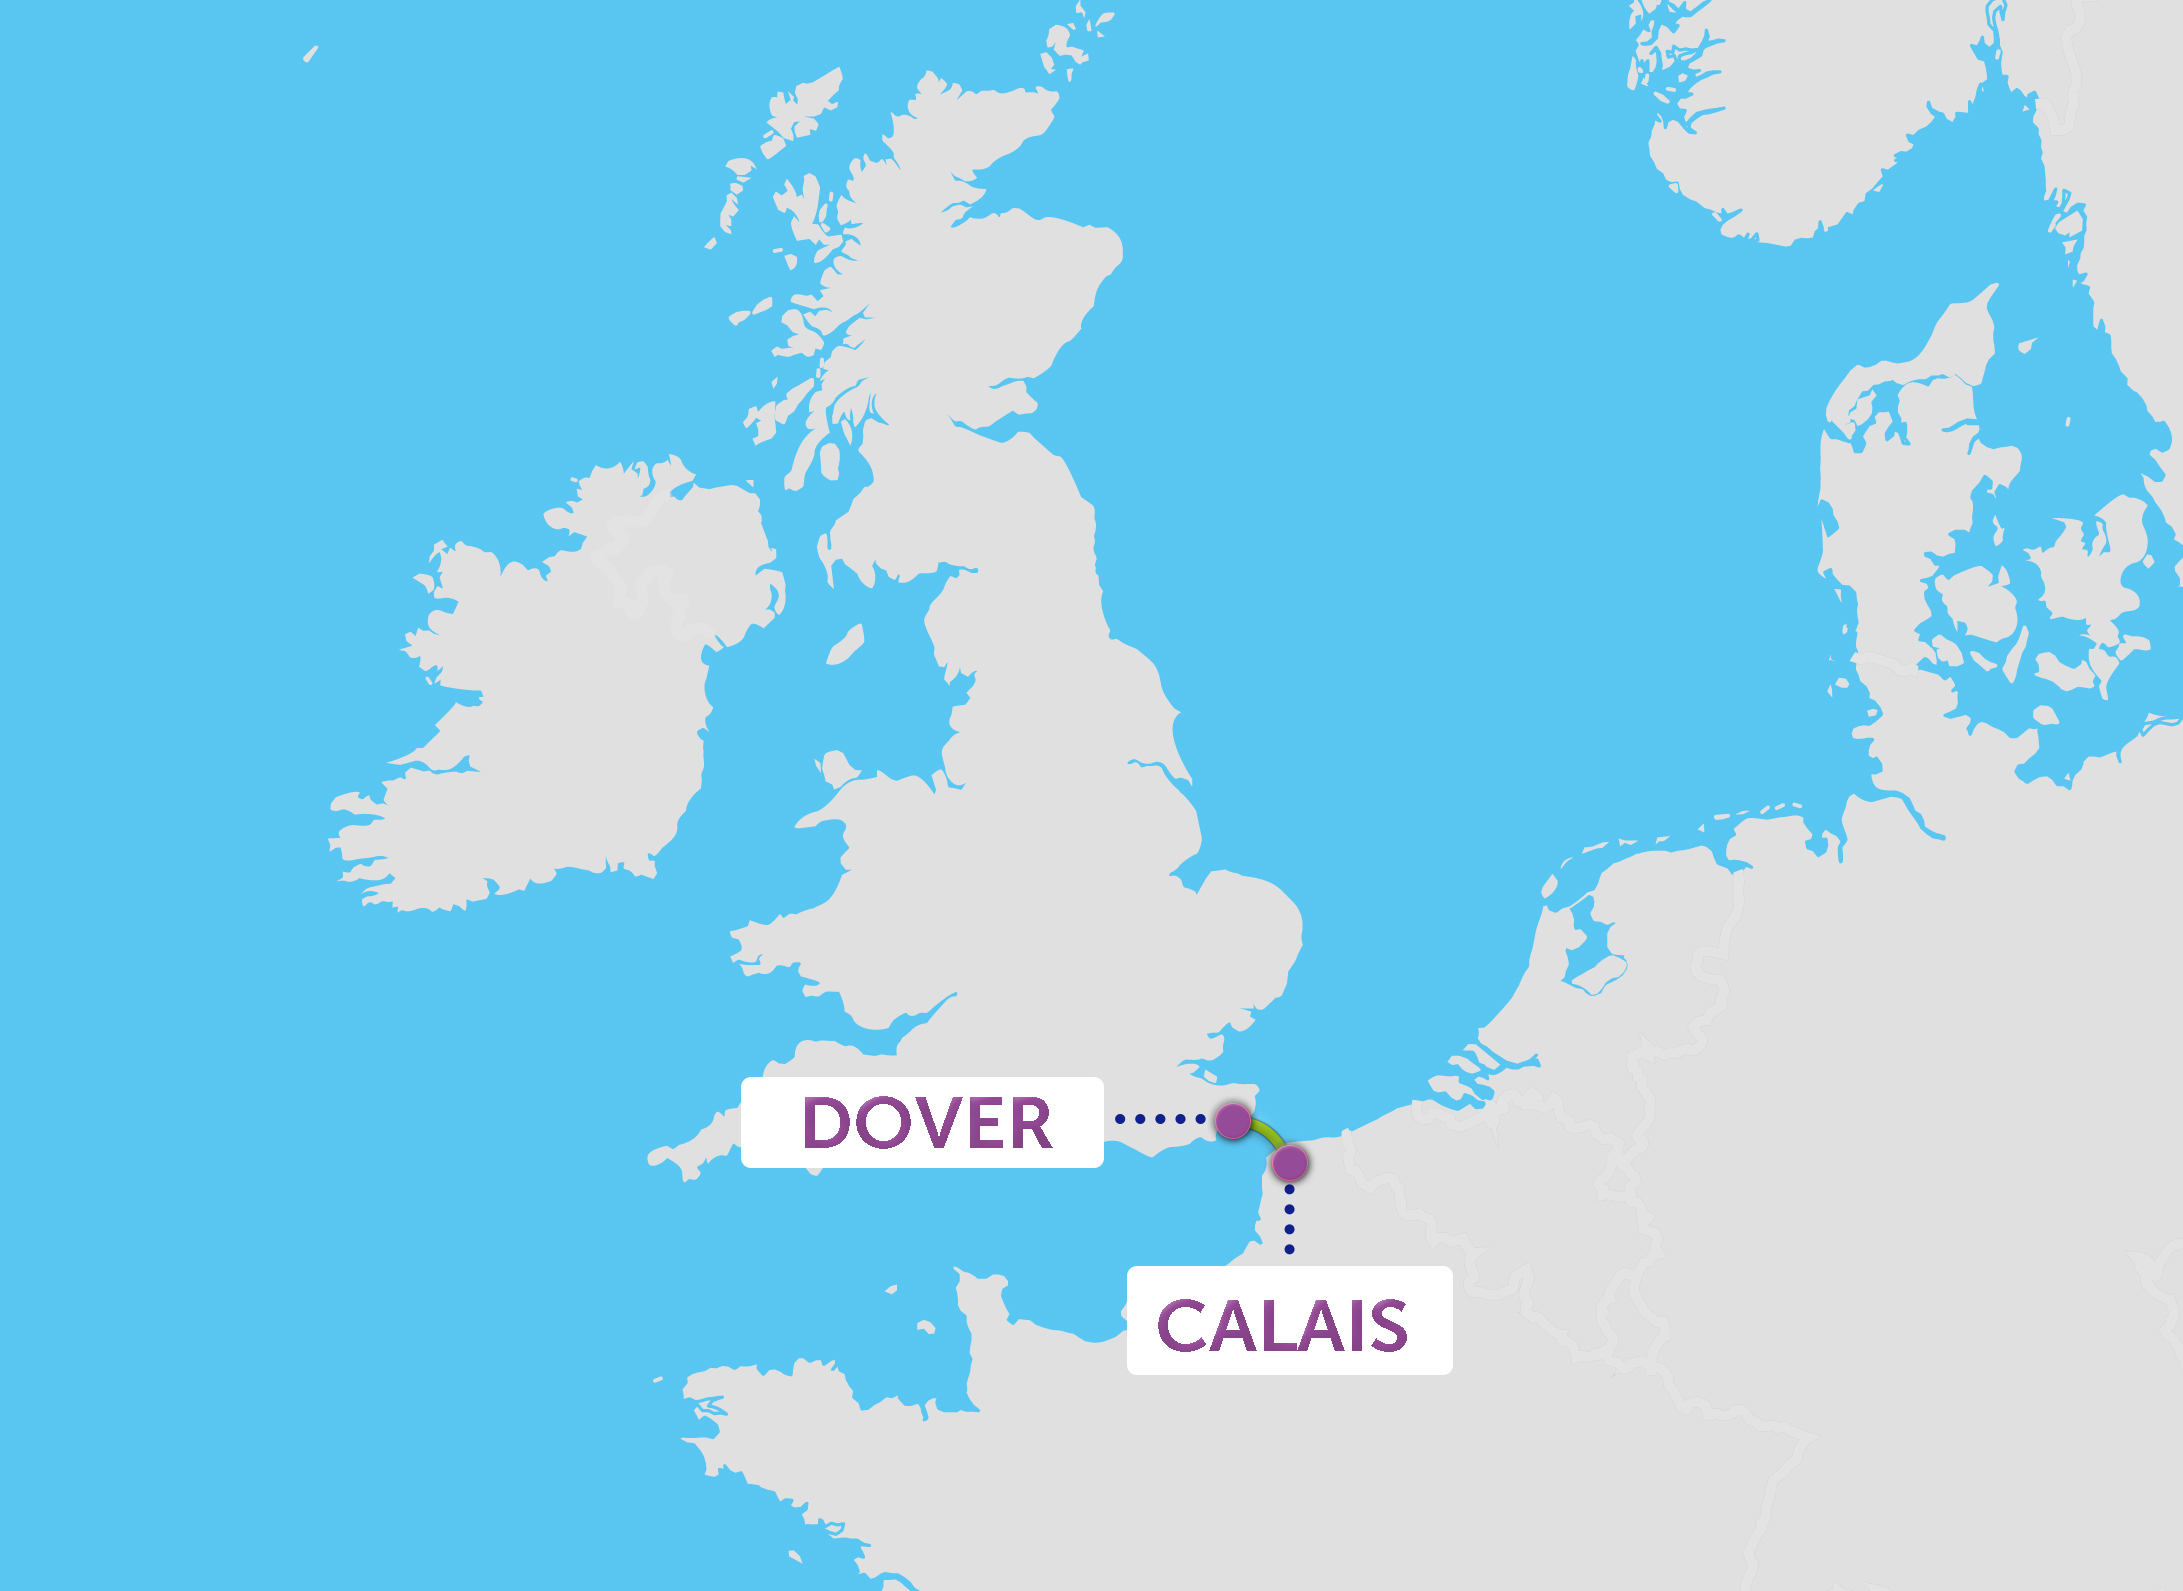 Karte der P&O Ferries Fähre nach England Strecke von Calais-Dover